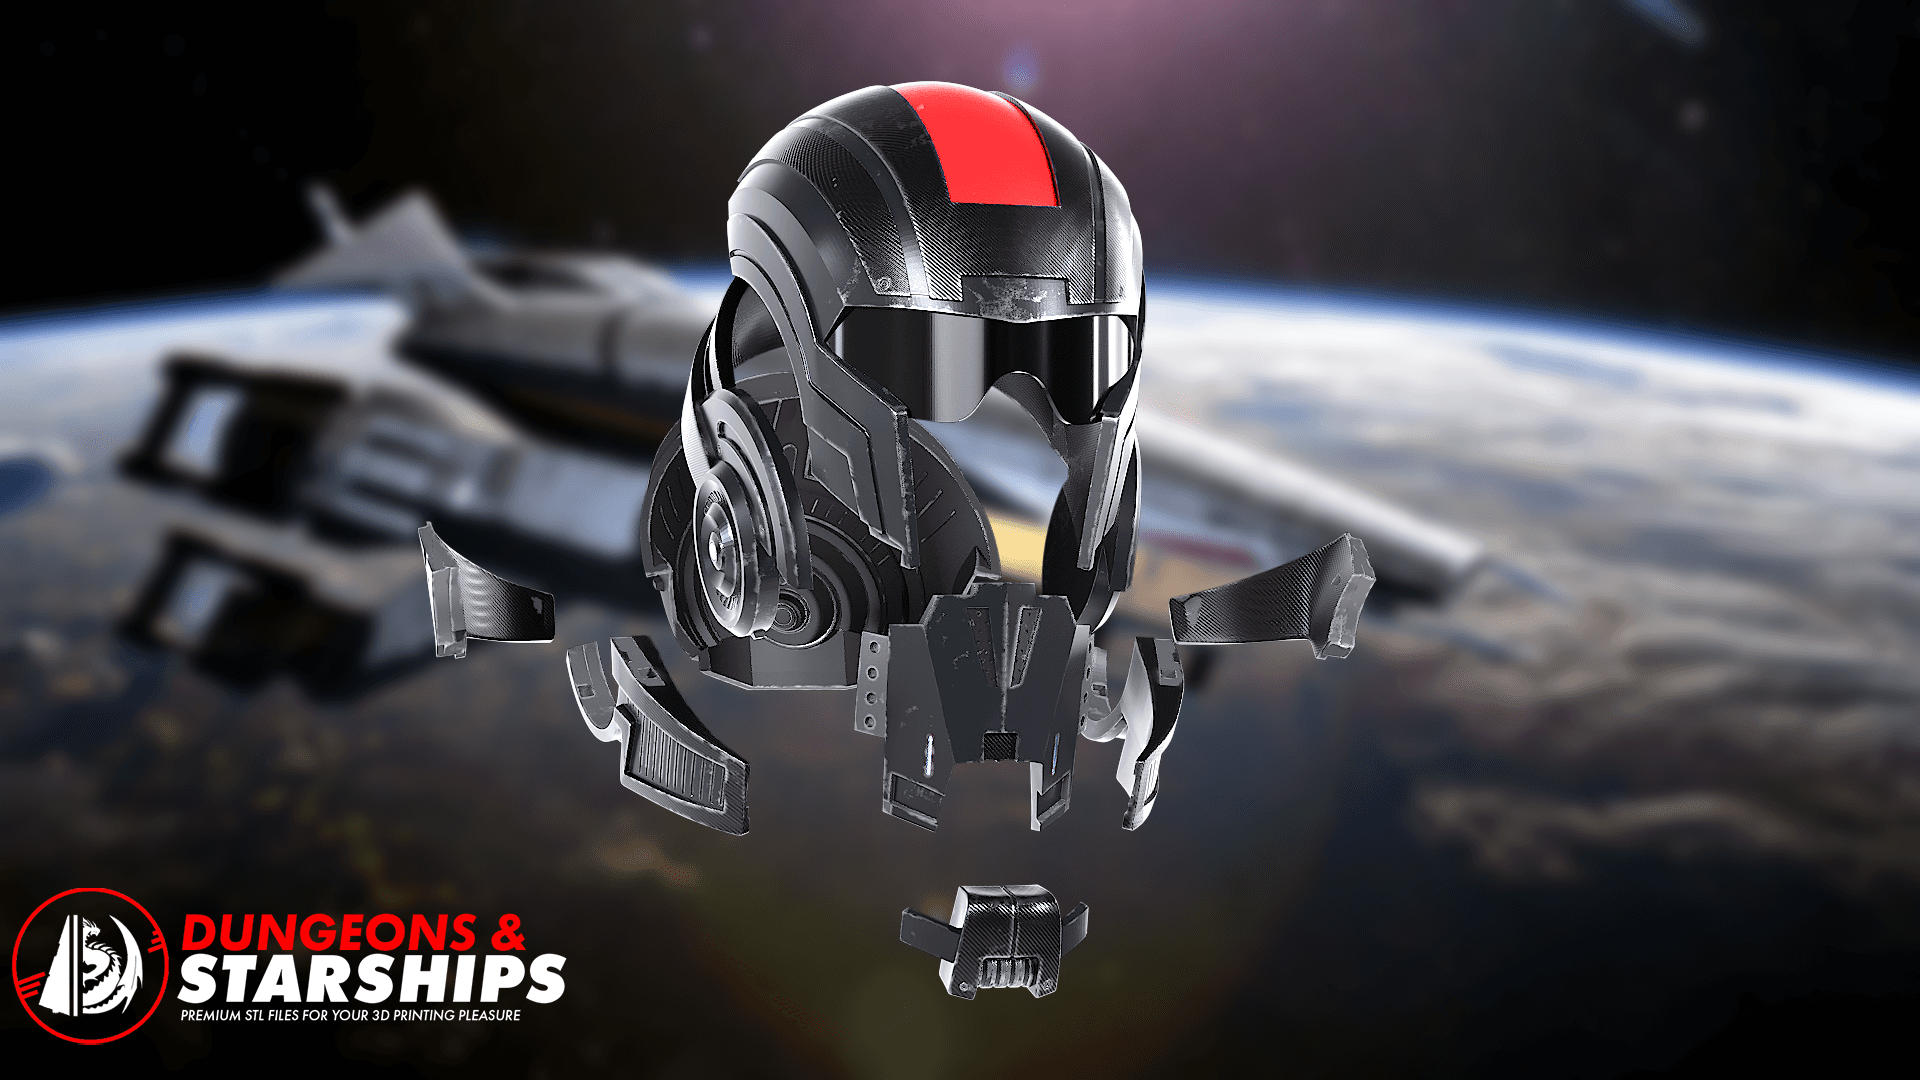 N7 Helmet - Mass Effect 3d model